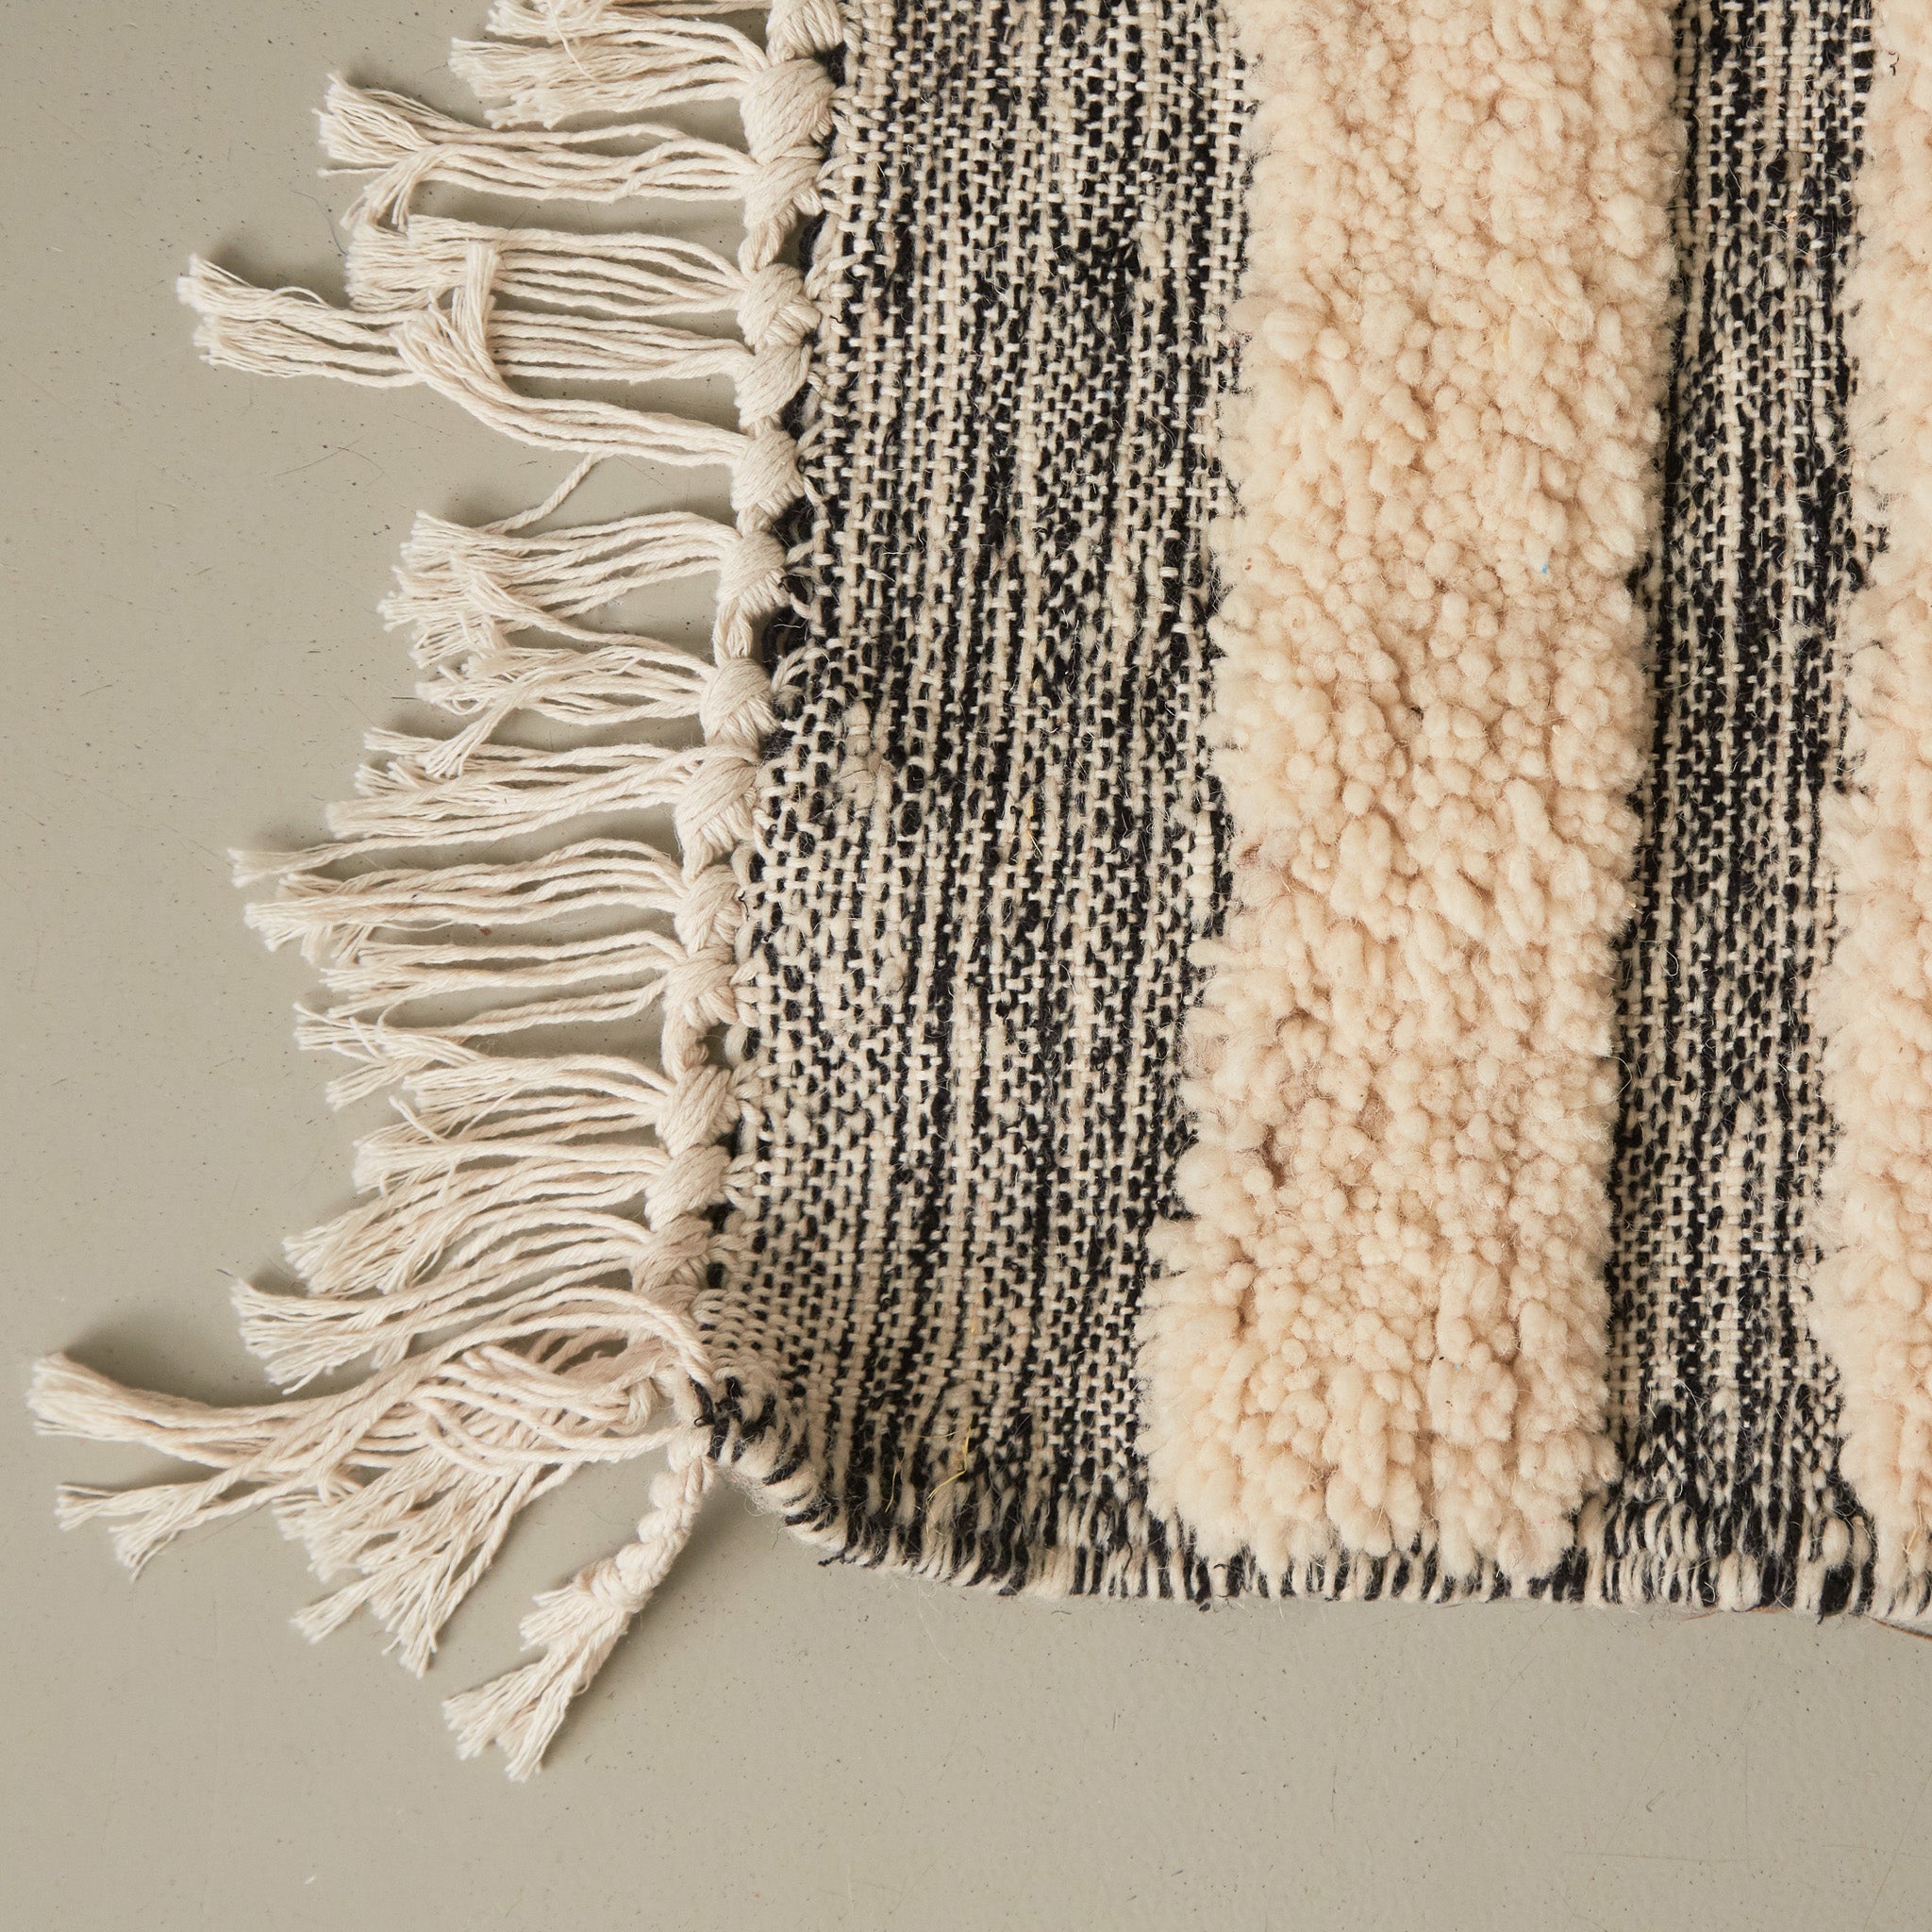 dettaglio della frangia e della lavorazione di un tappeto passatoia boujaad realizzato a mano con bande di lana bianca annodata e bande grigie tessute